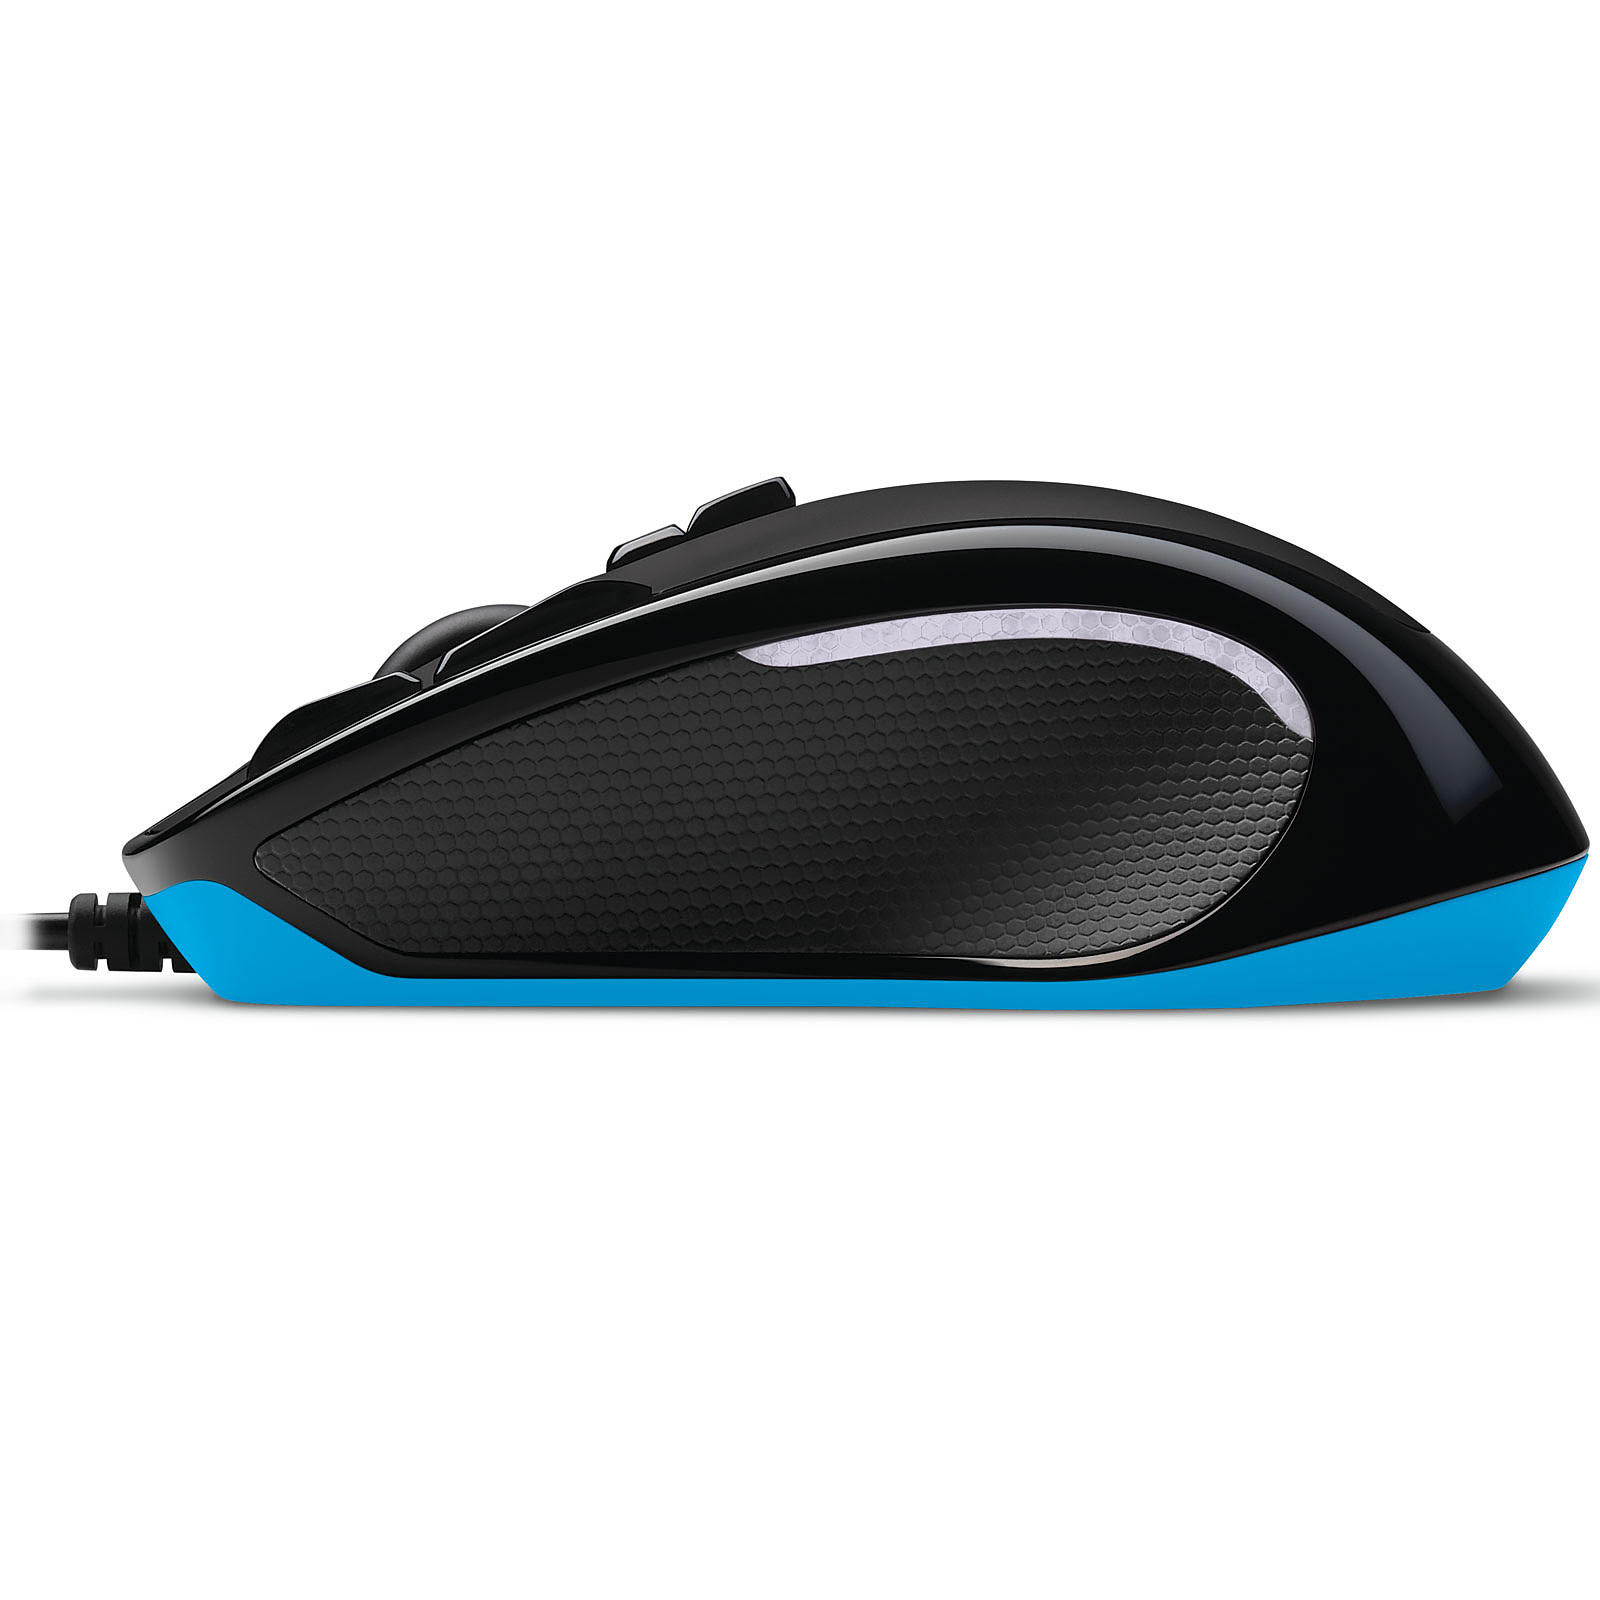  G300s Gaming Mouse (910-004346 **) - Achat / Vente Souris PC sur Picata.fr - 3